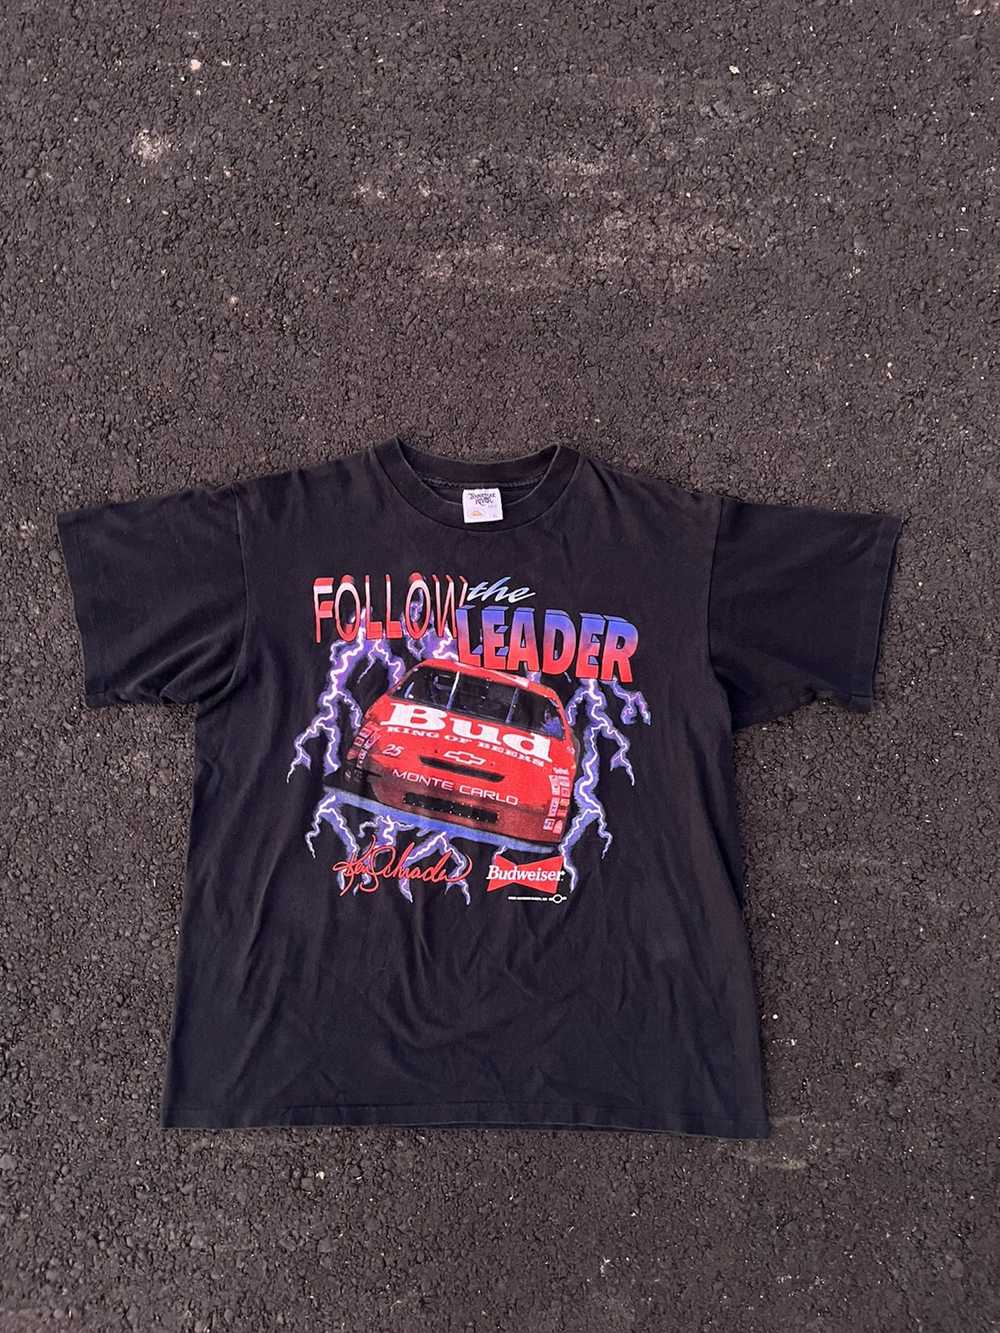 NASCAR × Vintage Budweiser Nascar T-shirt - image 1